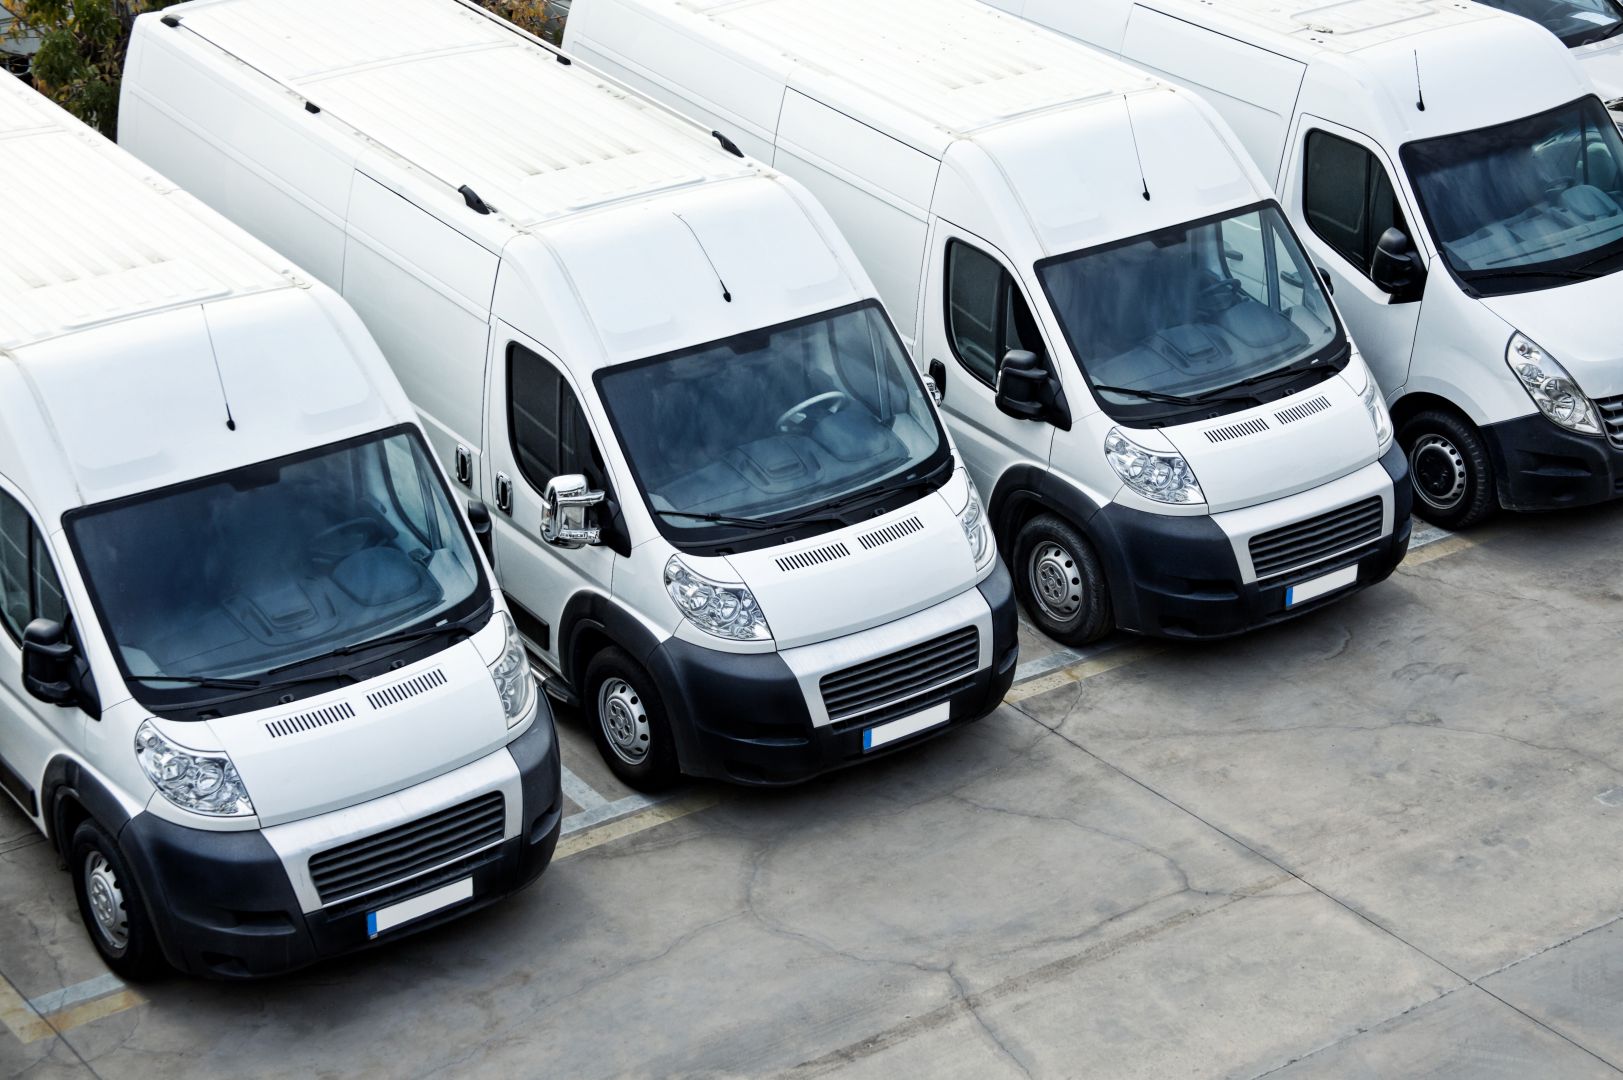 Poptávka na pronájem nákladního vozu (Služby) - Hodonín